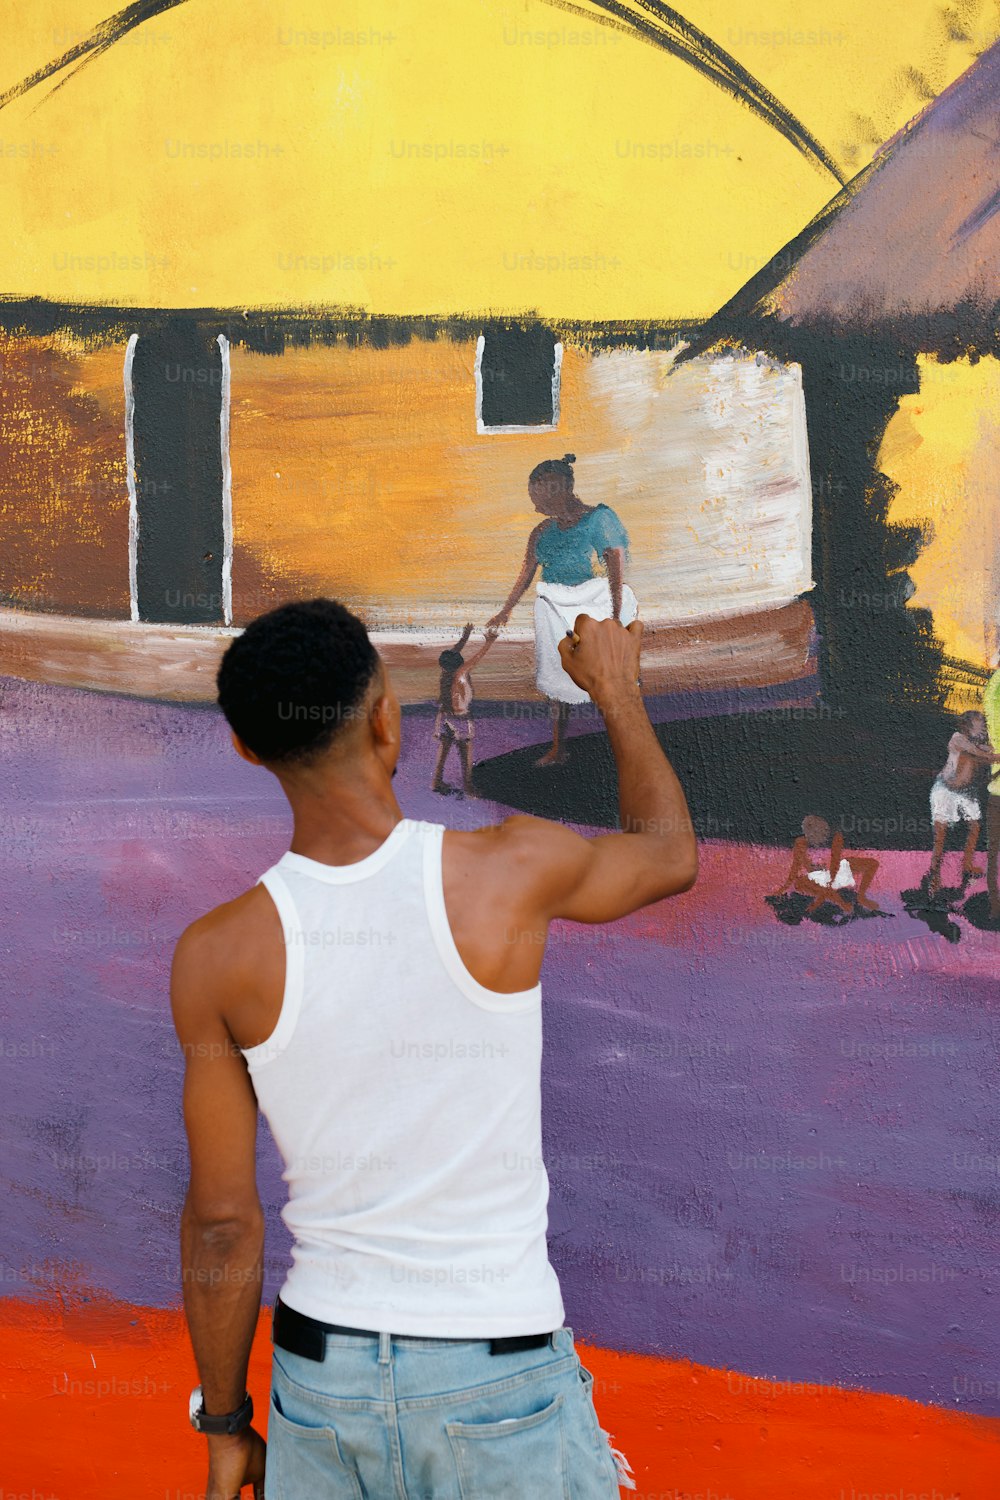 Un hombre está pintando un mural en una pared